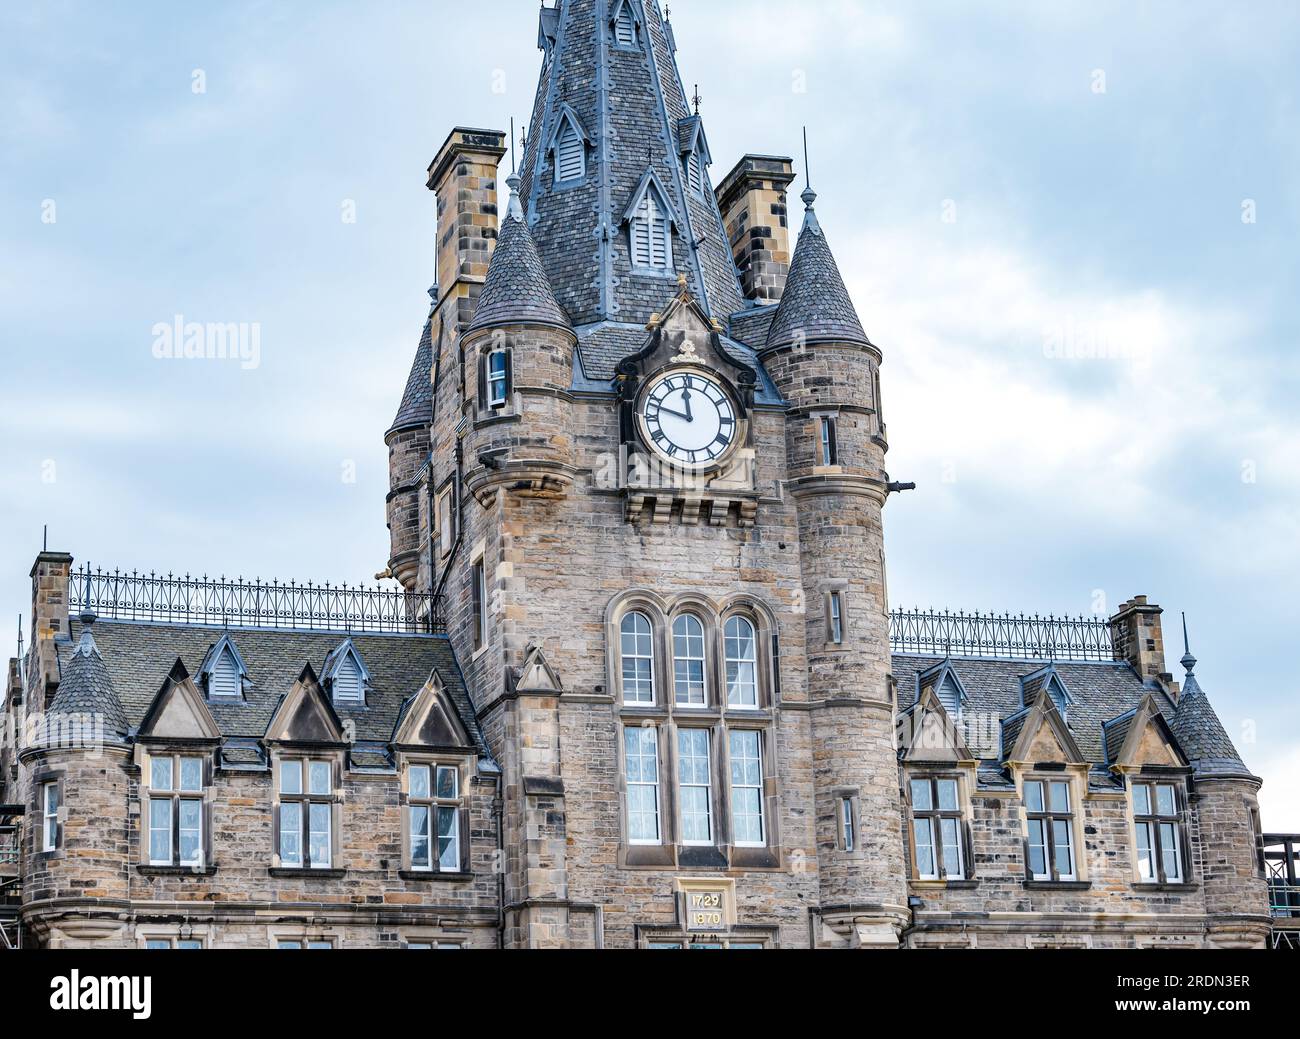 Viktorianischer gotischer Turm und Uhrenturm des ehemaligen Royal Infirmary Gebäudes, jetzt Edinburgh Futures Institute in Quartermile, Schottland, Großbritannien Stockfoto